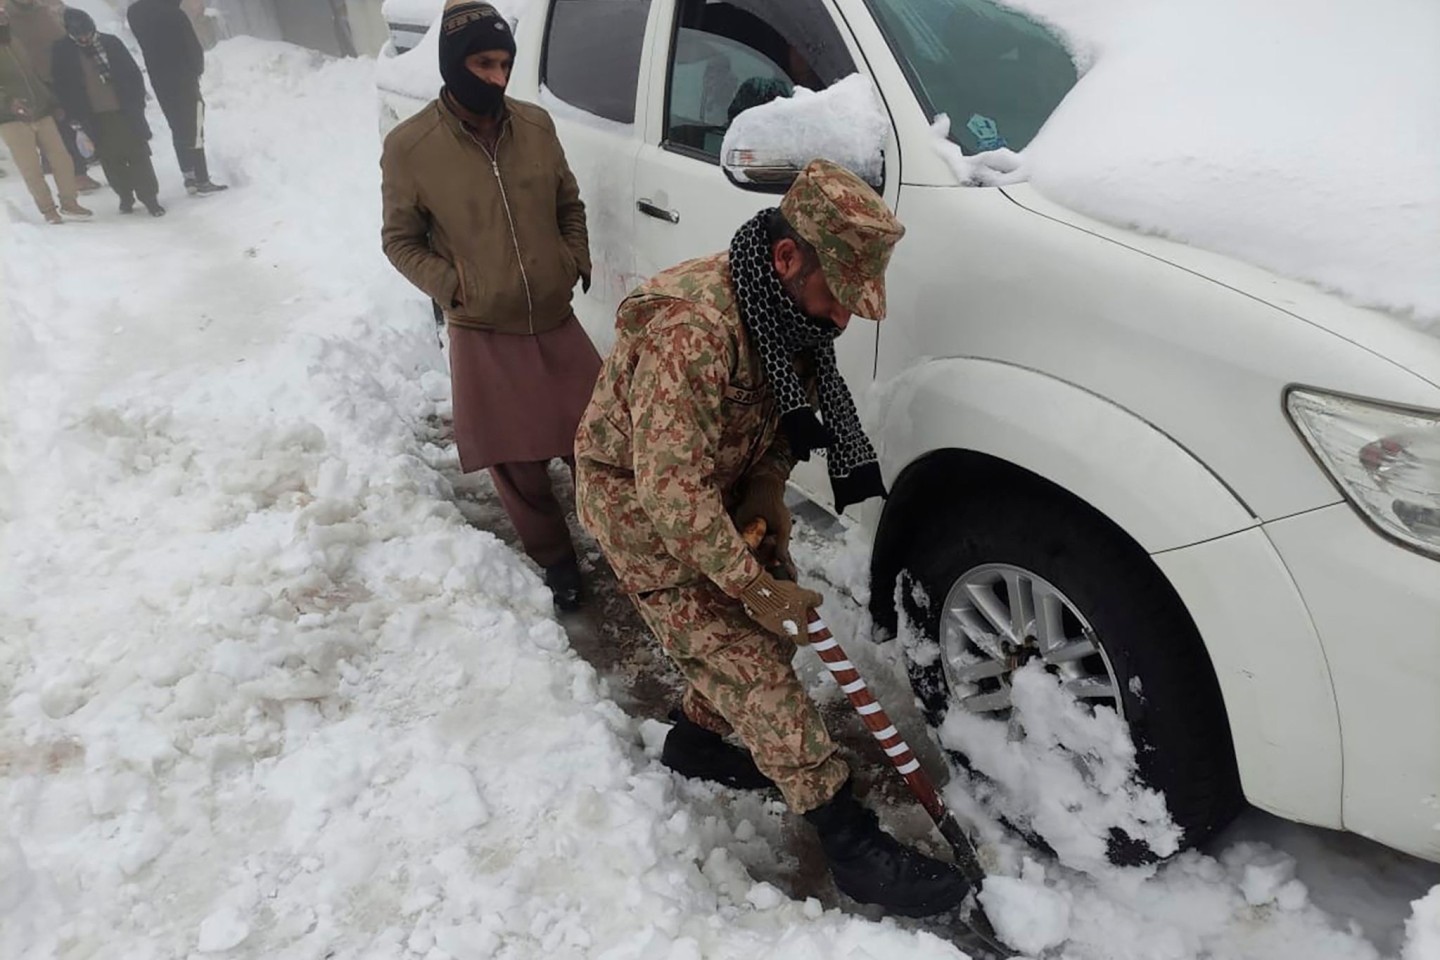 Nichts geht mehr, ein Soldat hilft: Nach einem heftigen Wintereinbruch im Norden Pakistans sind mindestens 21 Urlauber ums Leben gekommen.